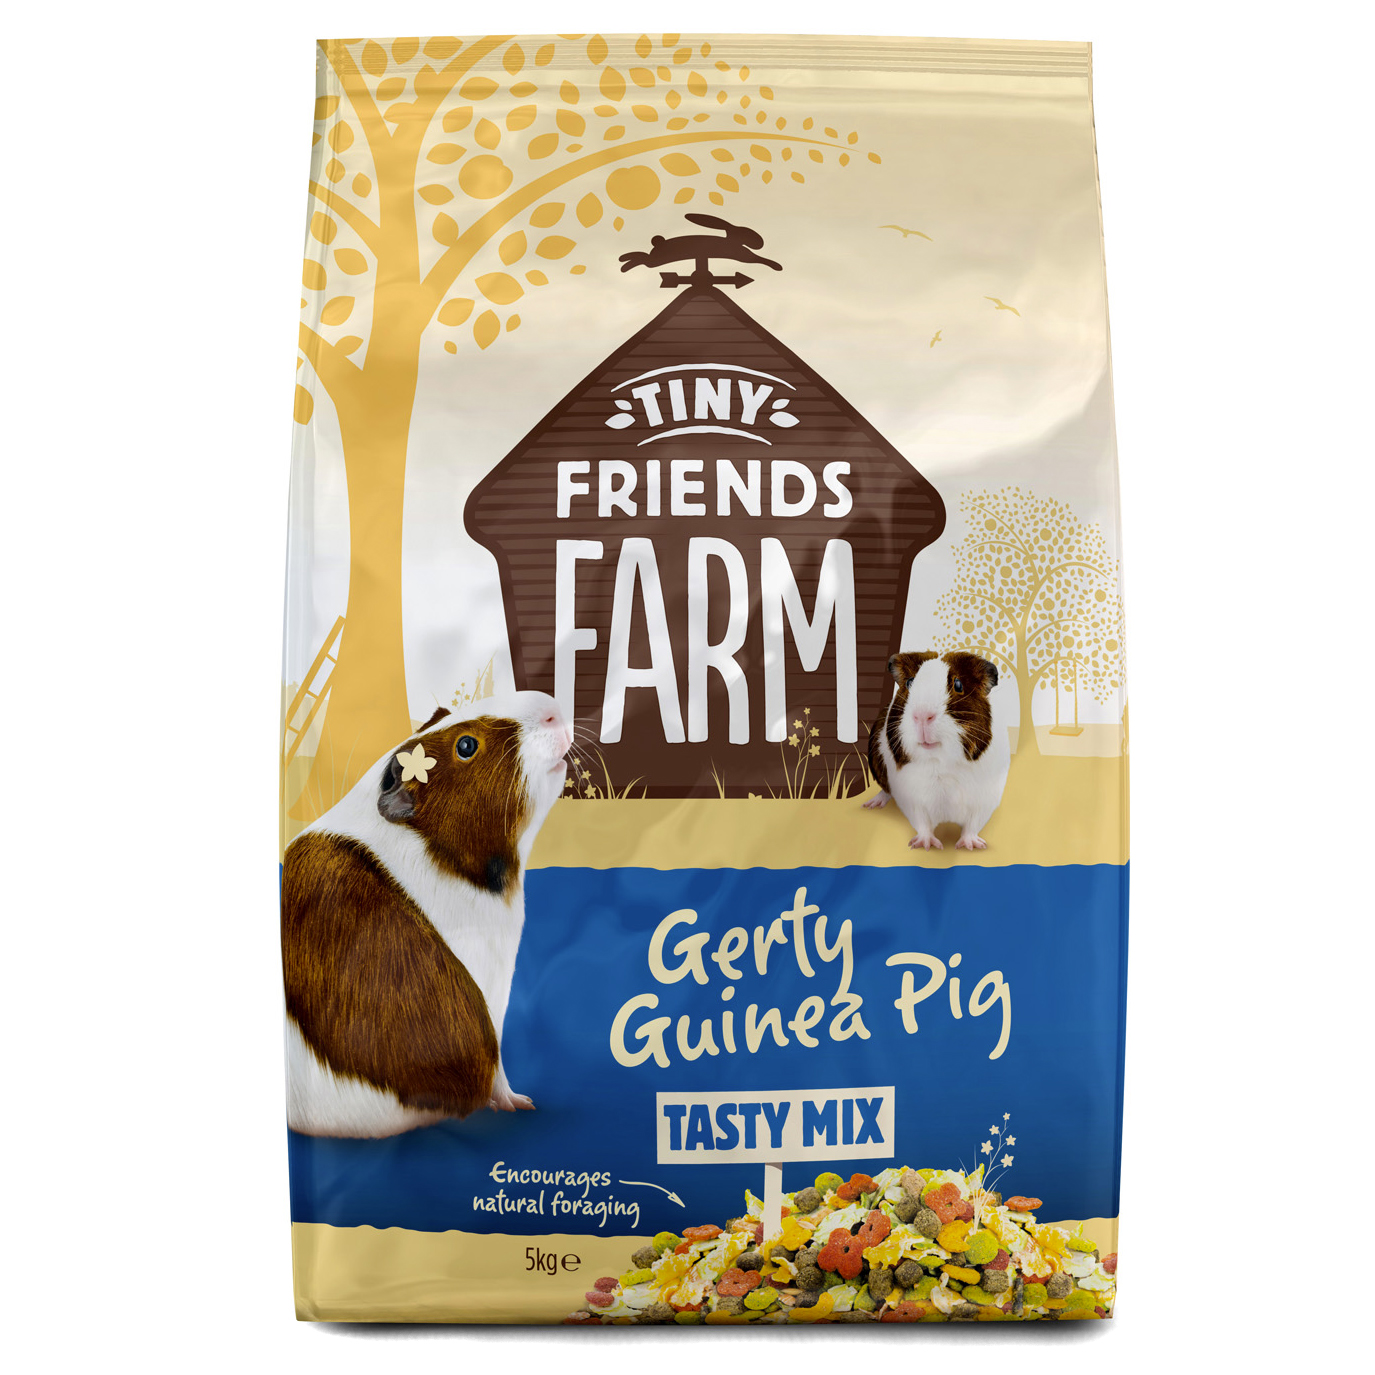 Tiny friends farm gerty guinea tasty mix 5kg